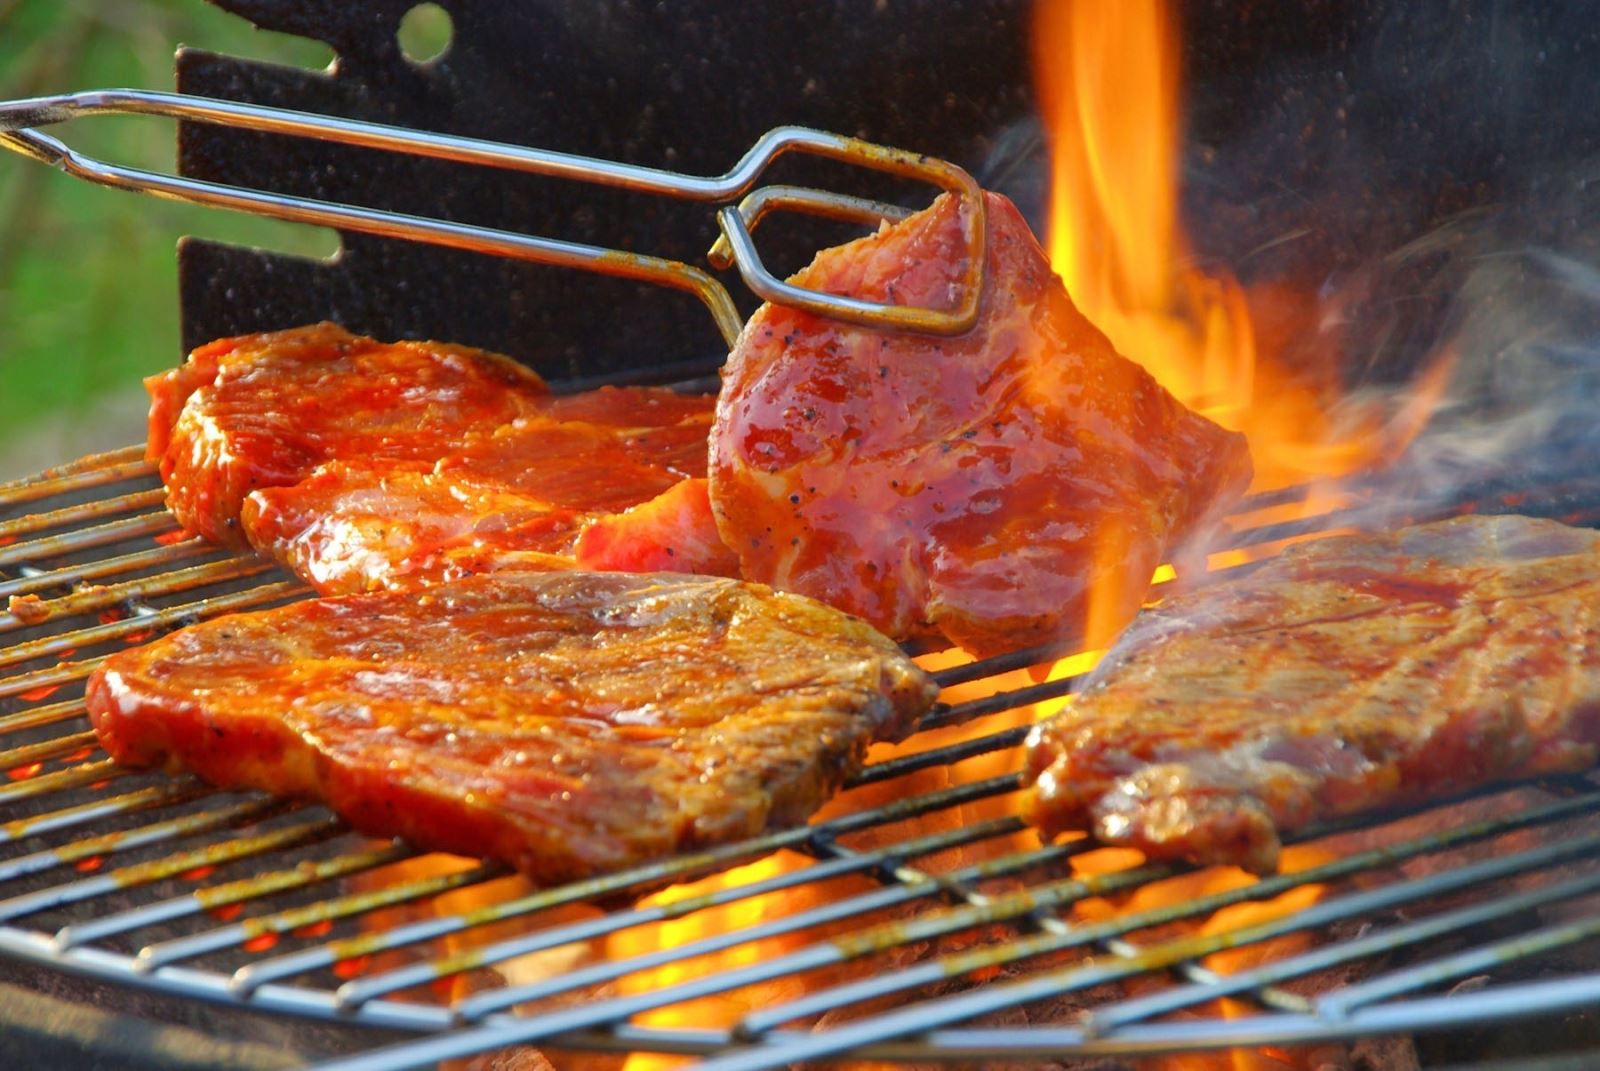   Ăn thịt đỏ chế biến ở nhiệt độ cao có thể làm tăng nguy cơ ung thư (Ảnh minh họa)  